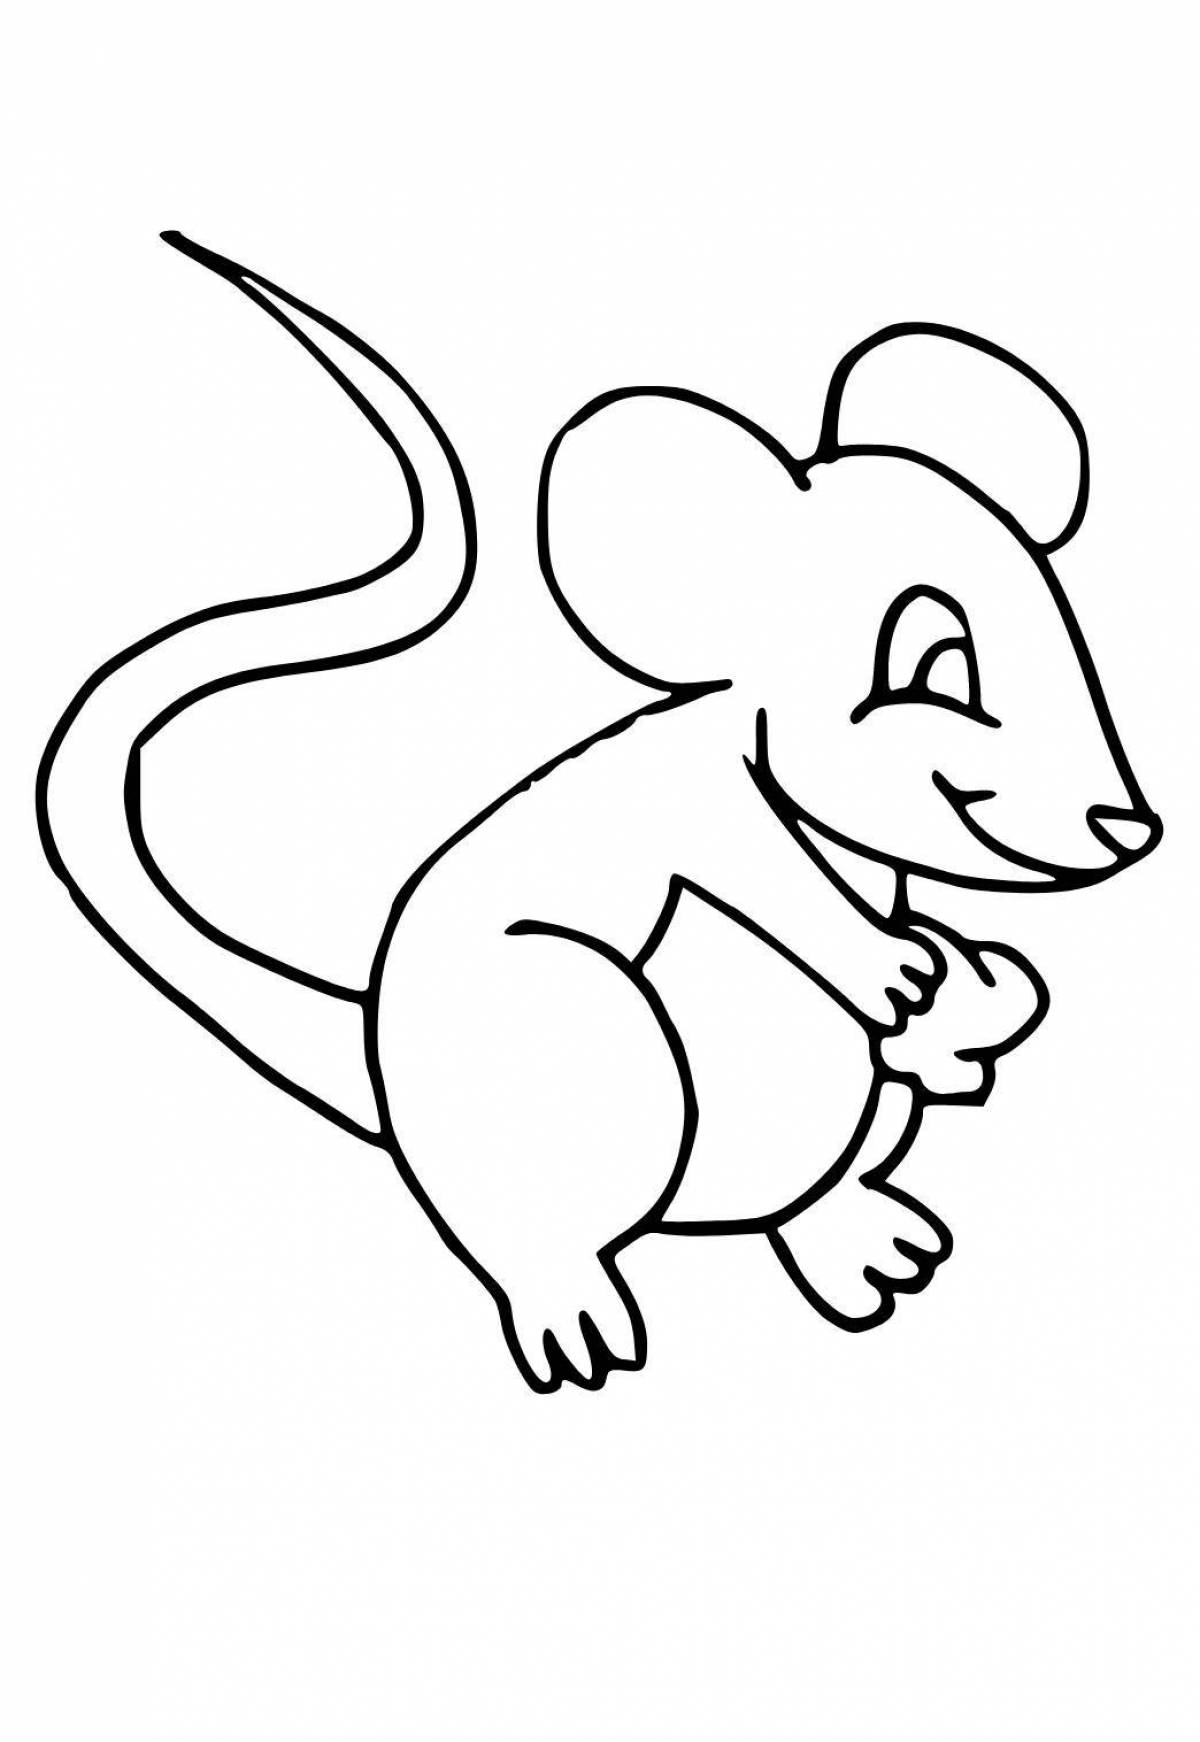 Восхитительная мышь норушка раскраска